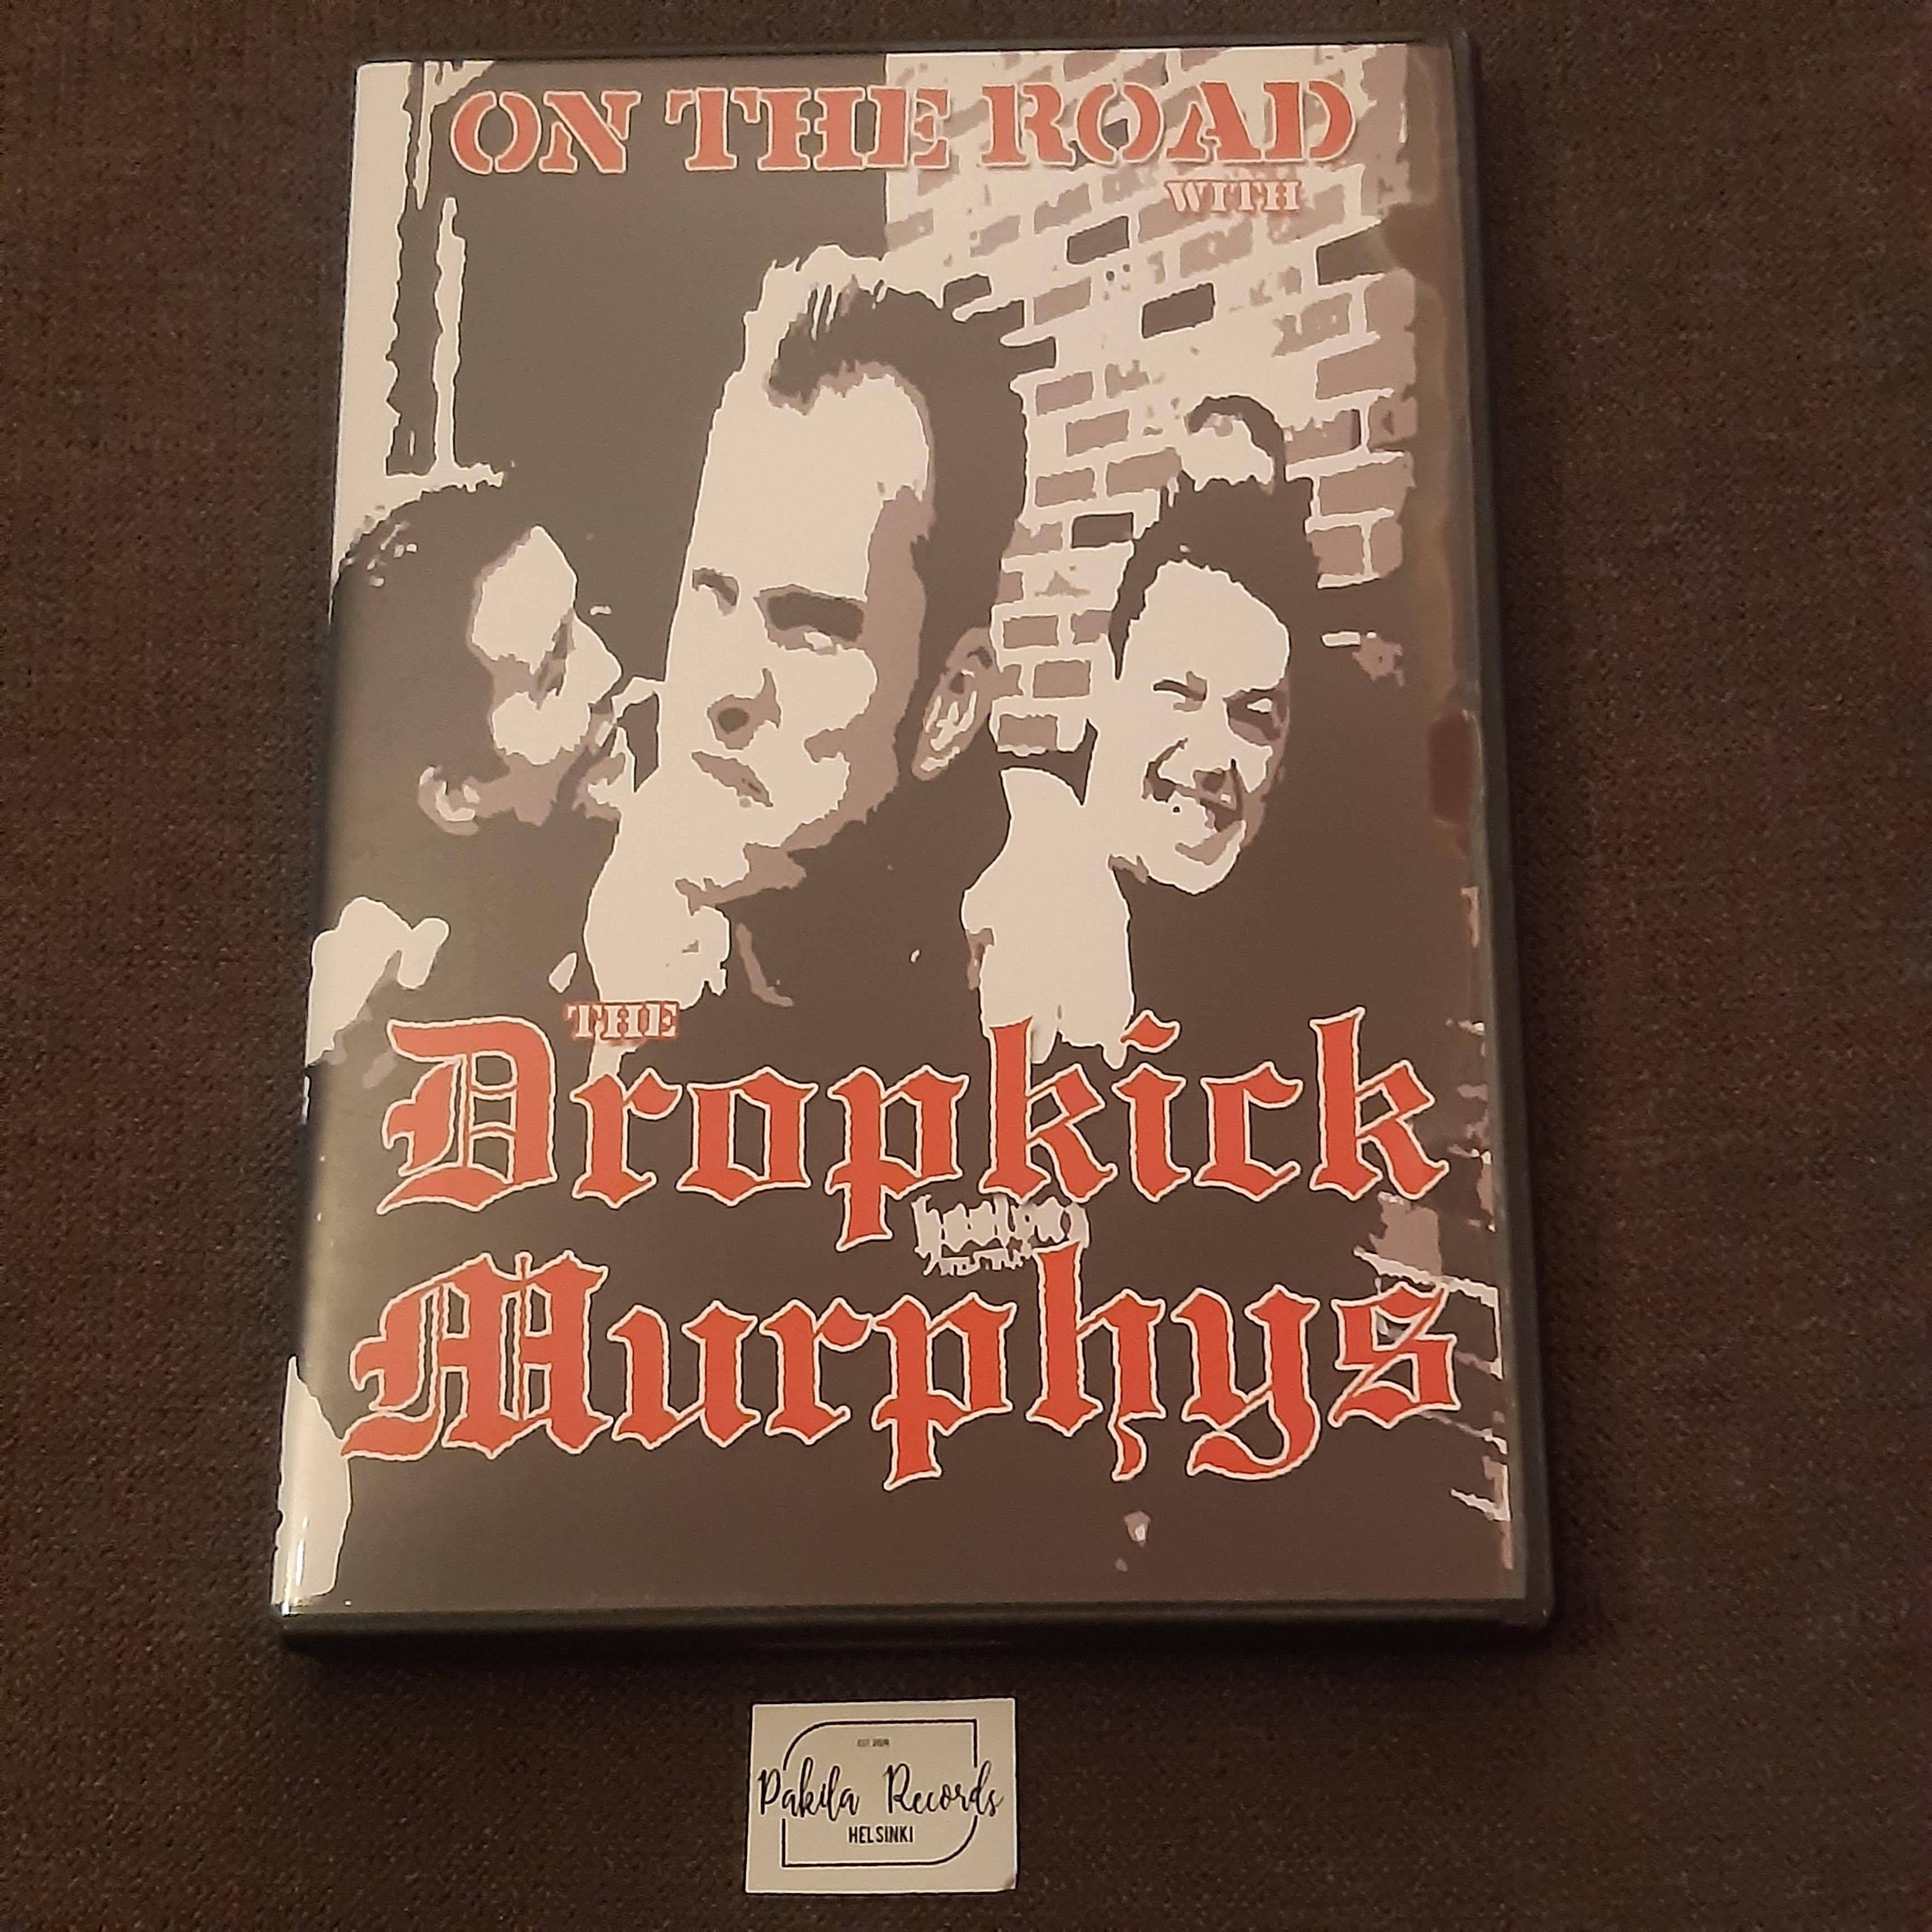 Dropkick Murphys - On The Road With The Dropkick Murphys - DVD (käytetty)